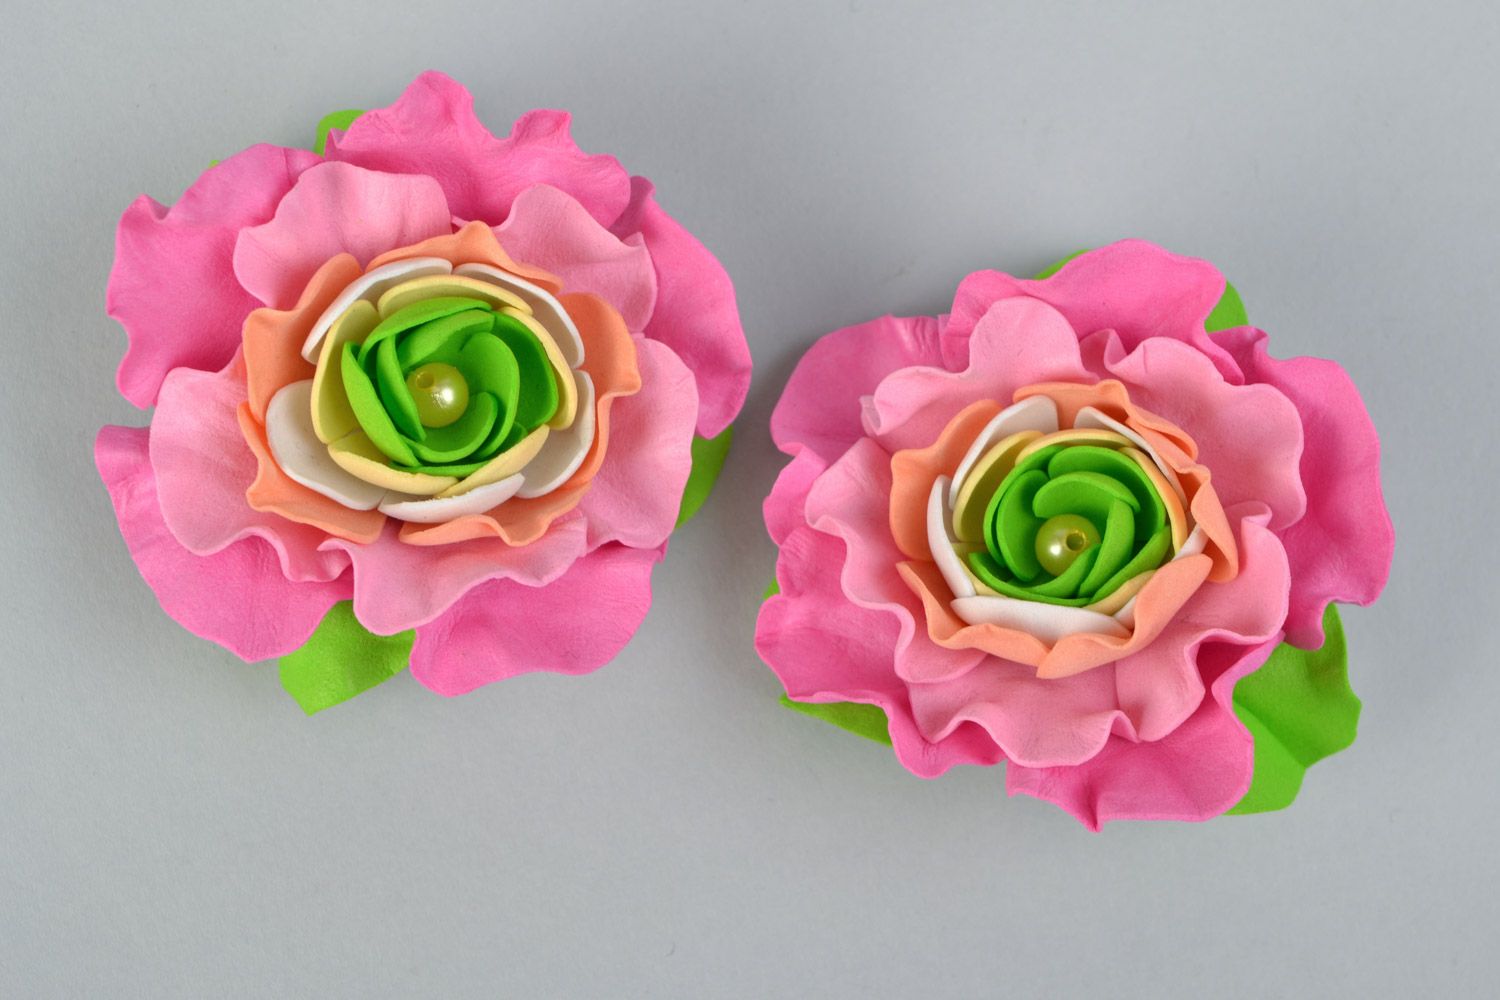 Заколки из фоамирана набор 2 штуки ручной работы цветы розовые с зеленым красивые фото 3